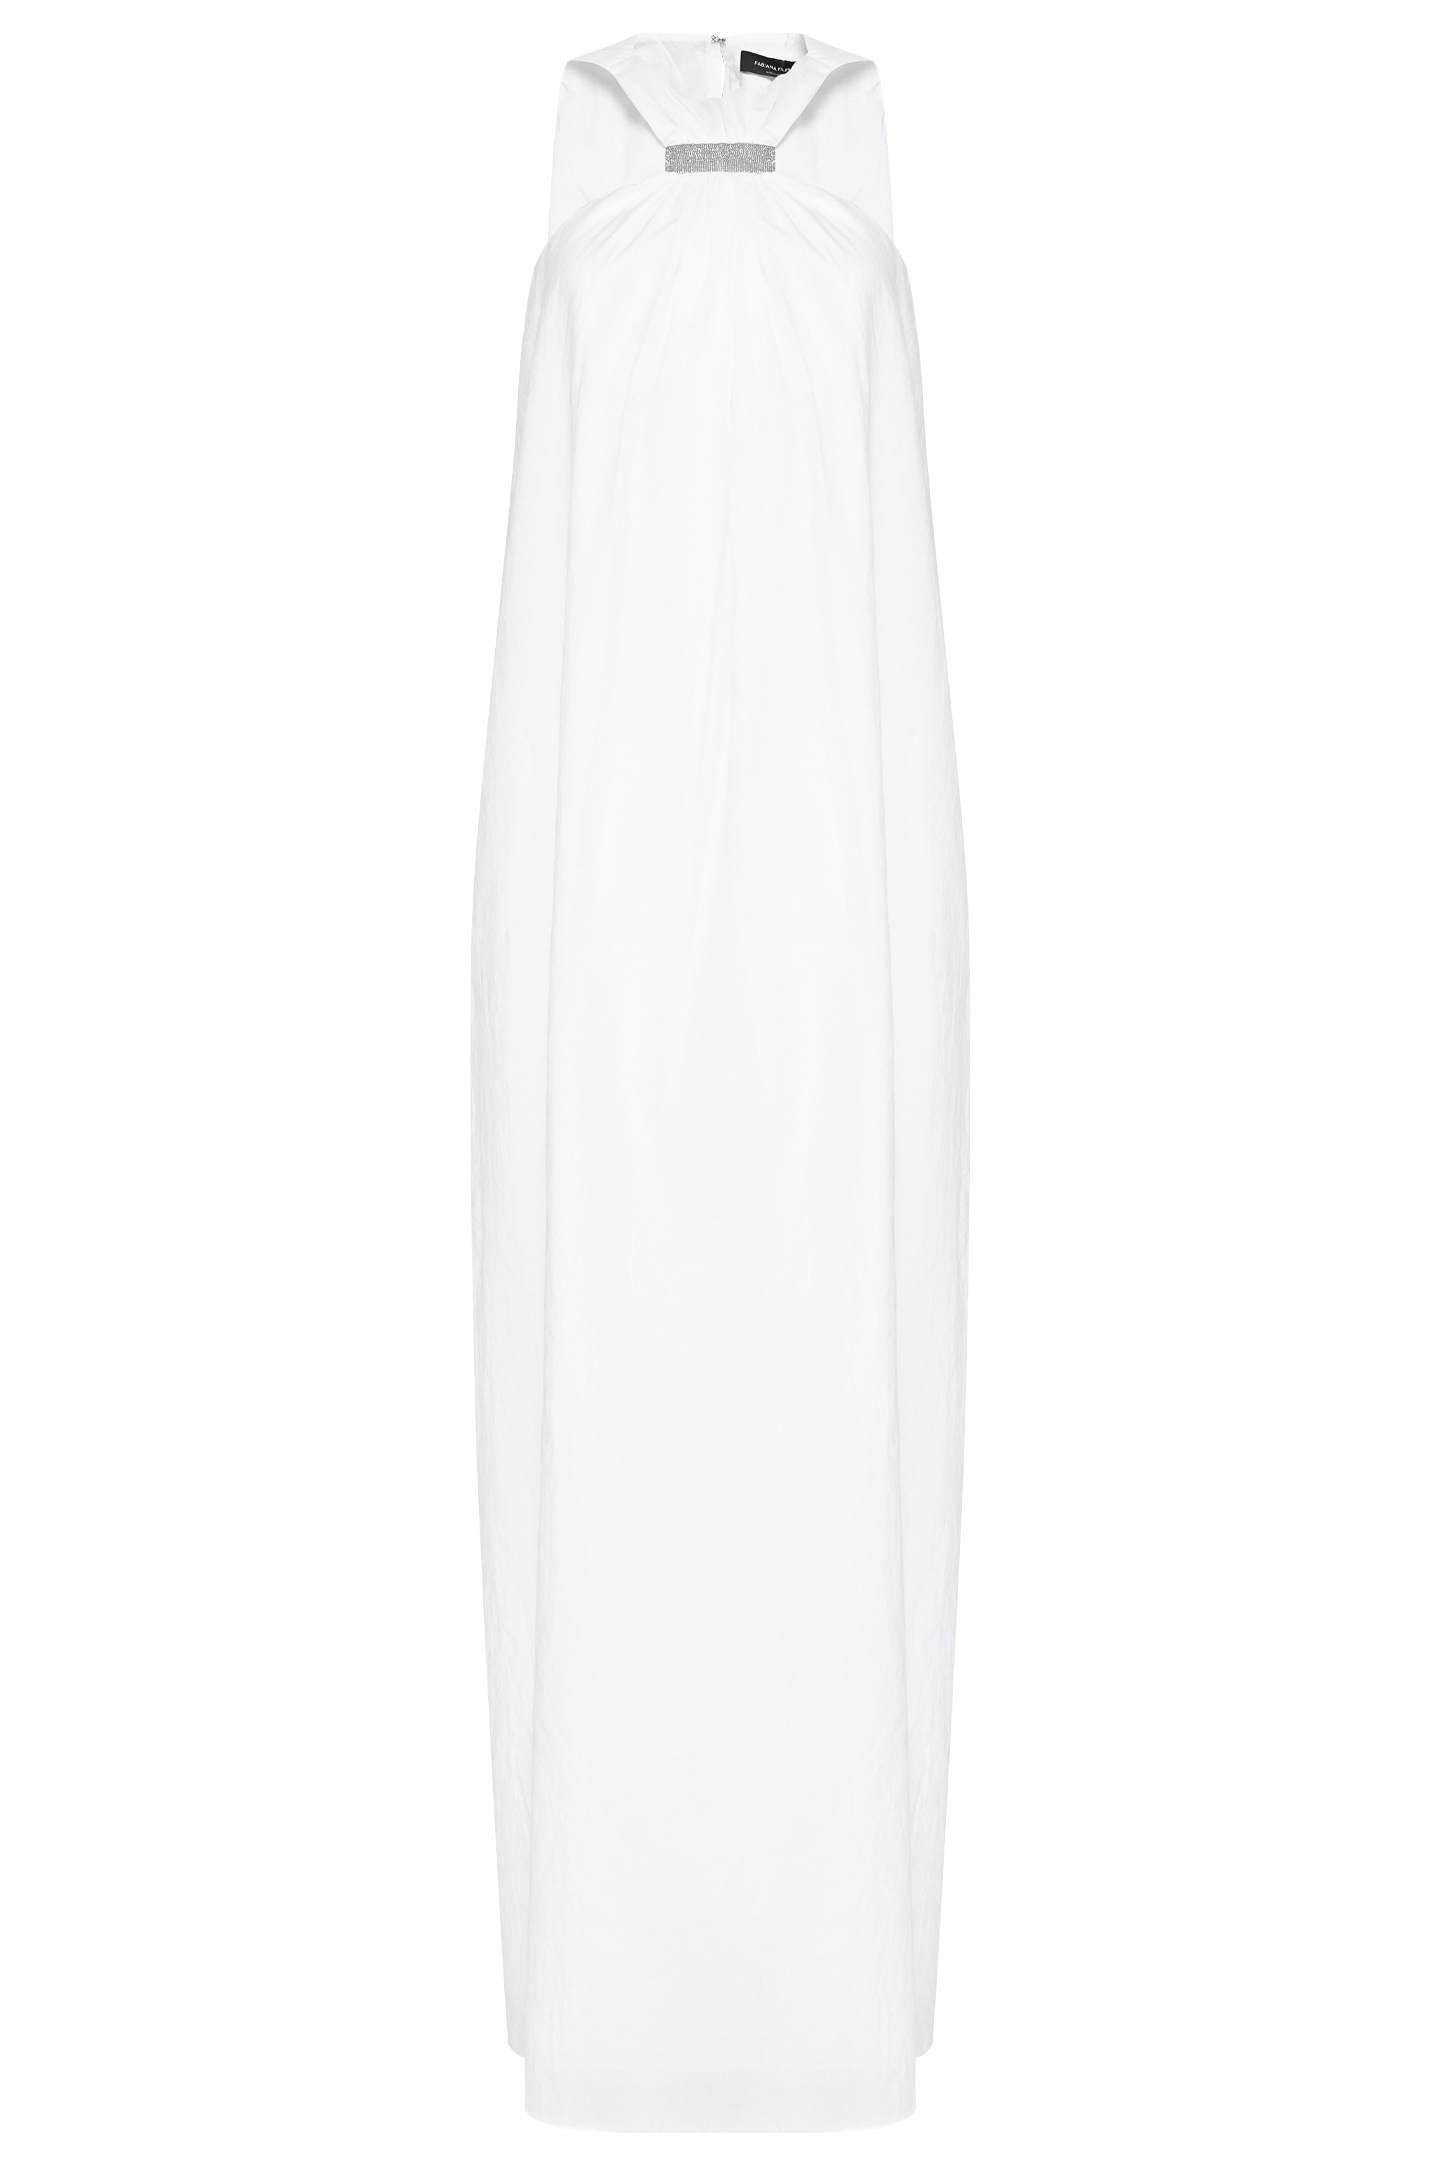 Платье FABIANA FILIPPI ABD273B590I813, цвет: Белый, Женский